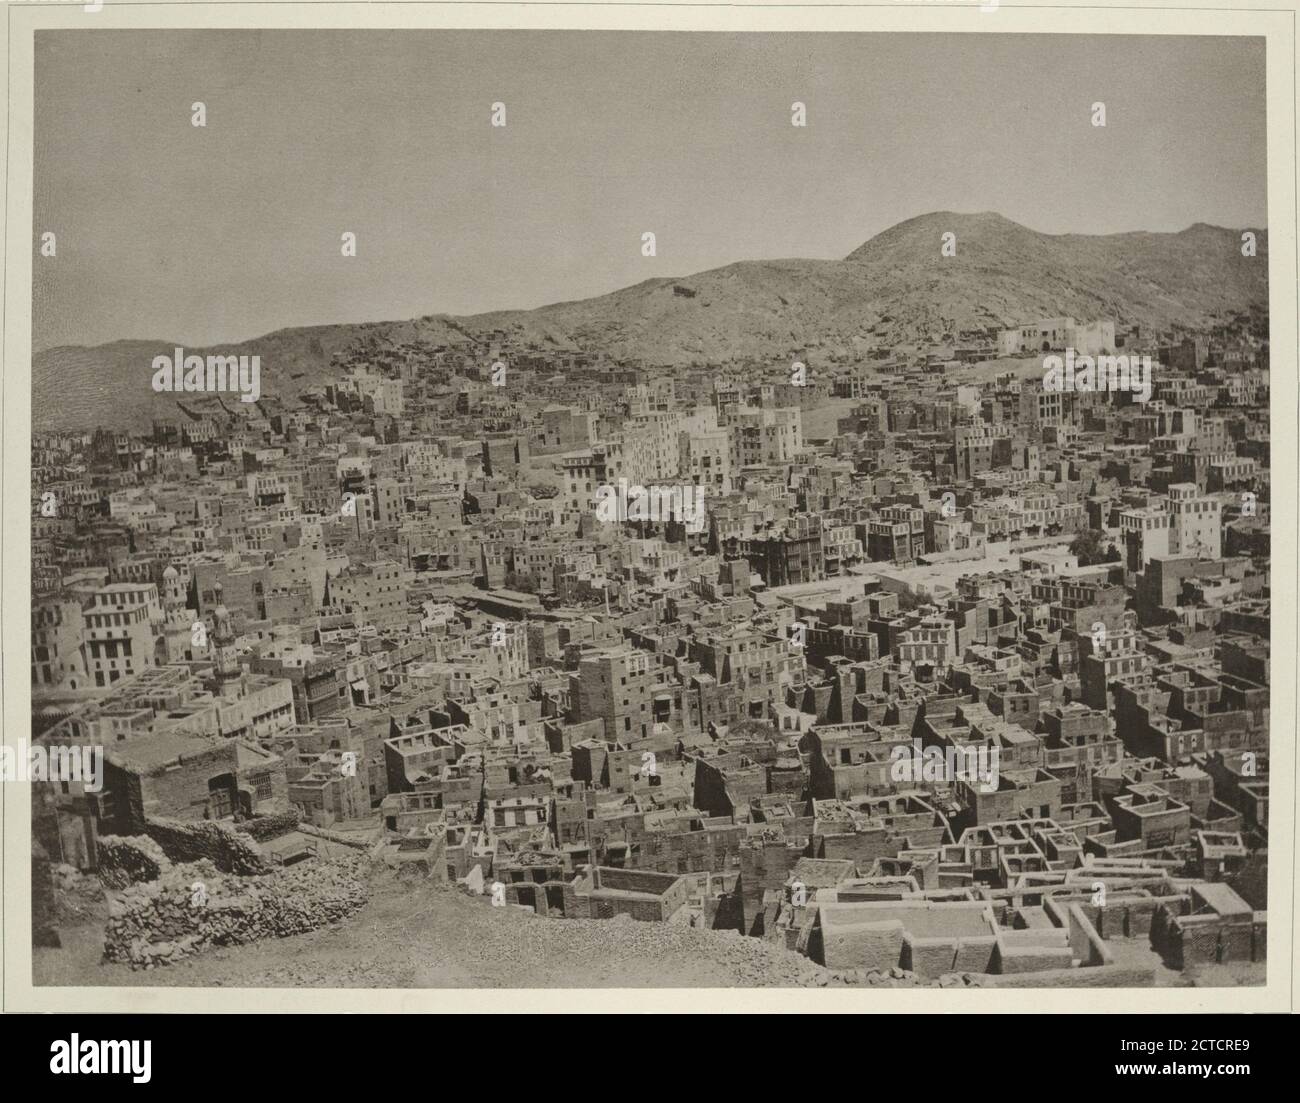 Dritte Ansicht der Stadt Mekka: Liens die nördliche Ecke der Moschee; ein wenig südöstlich von derselben das Bâb ès-salâm, Burch welches die Pilger in die Moschee eintreten., STILL image, 1889 Banque D'Images